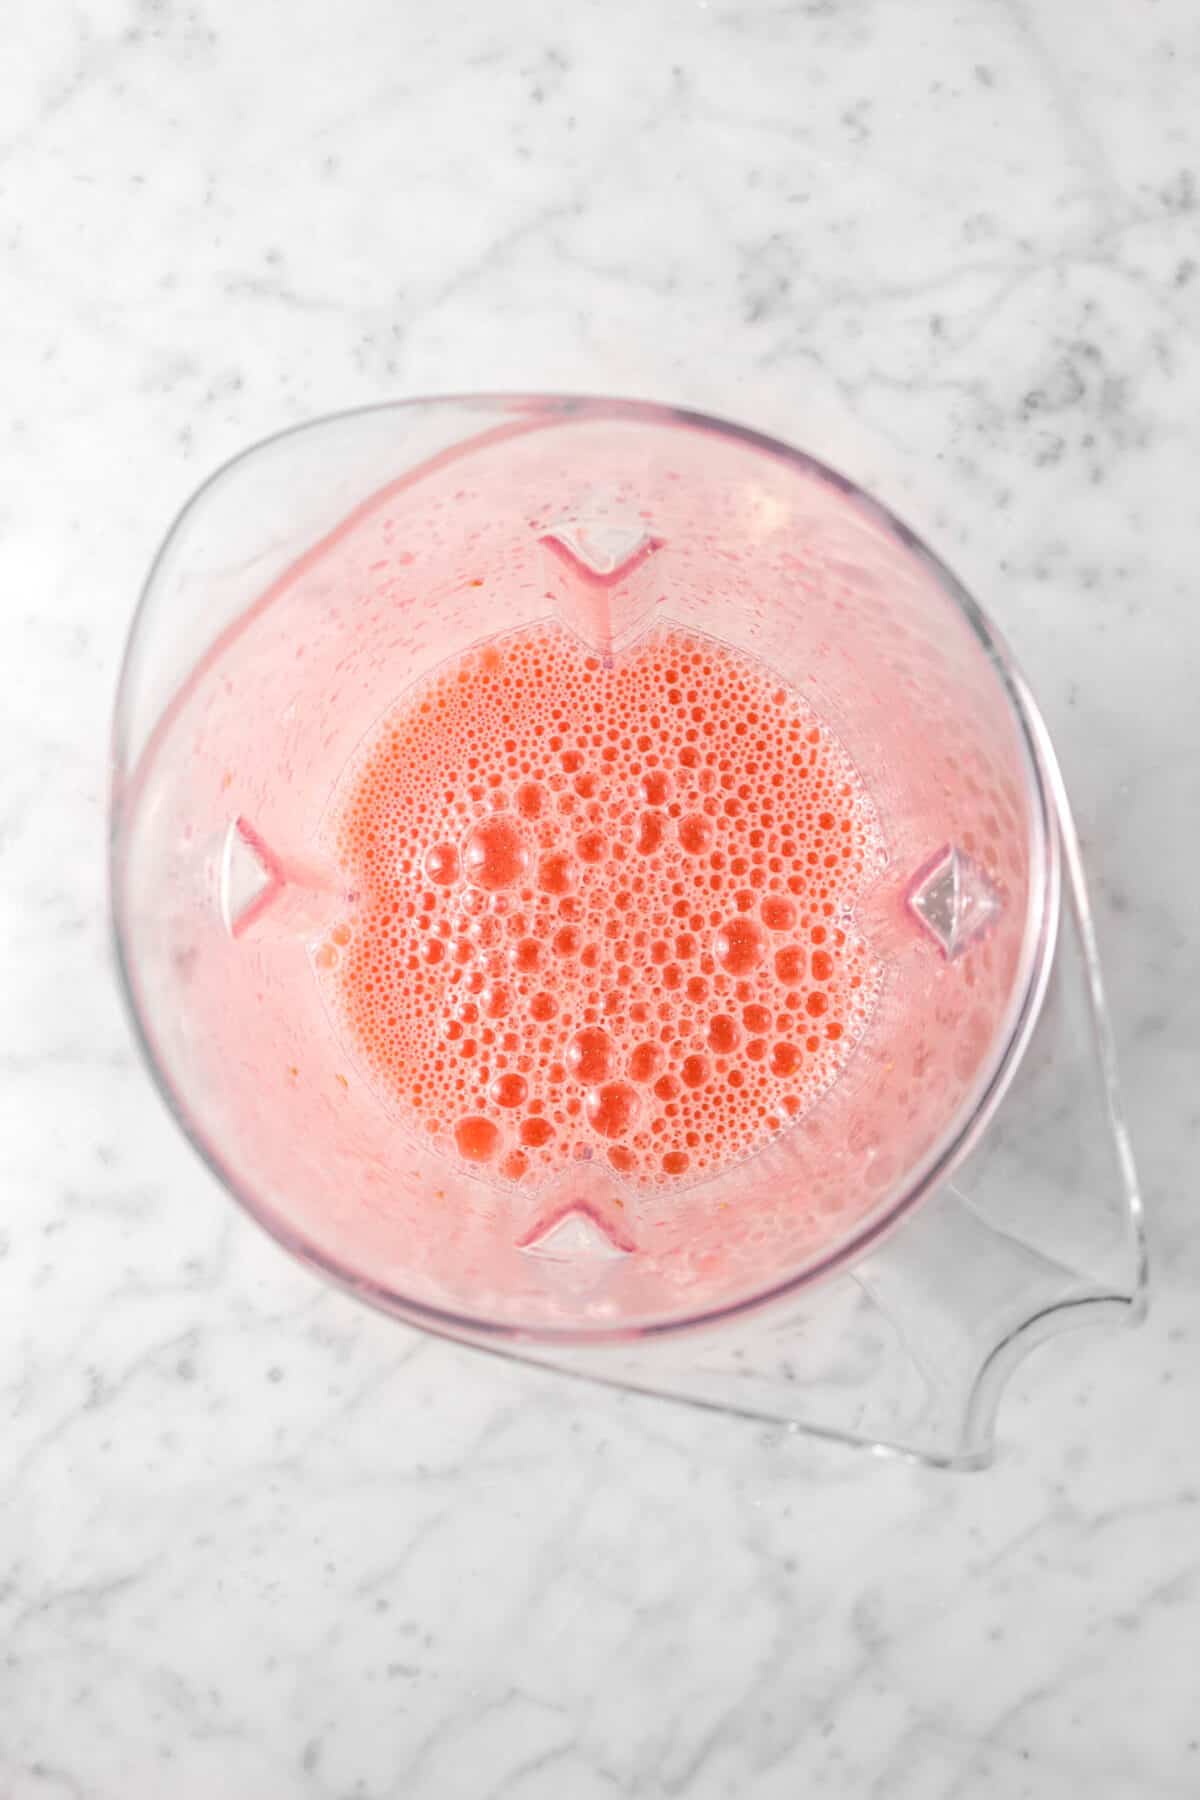 raspberry lemonade in a blender